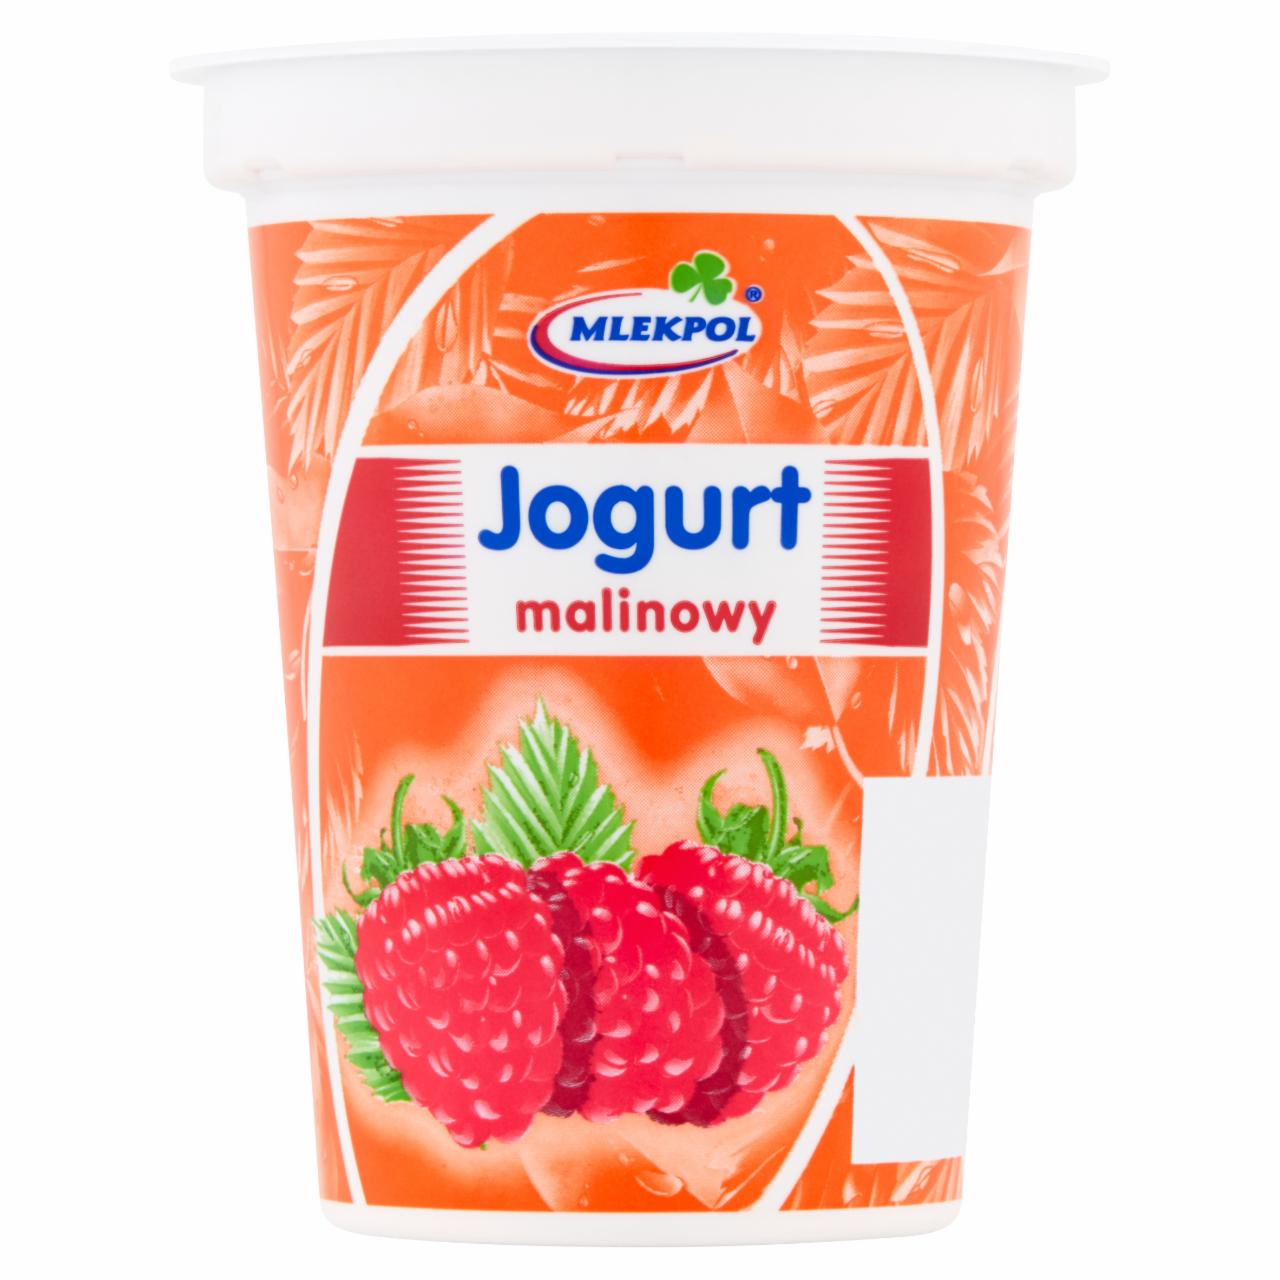 Zdjęcia - Mlekpol Jogurt malinowy 400 g